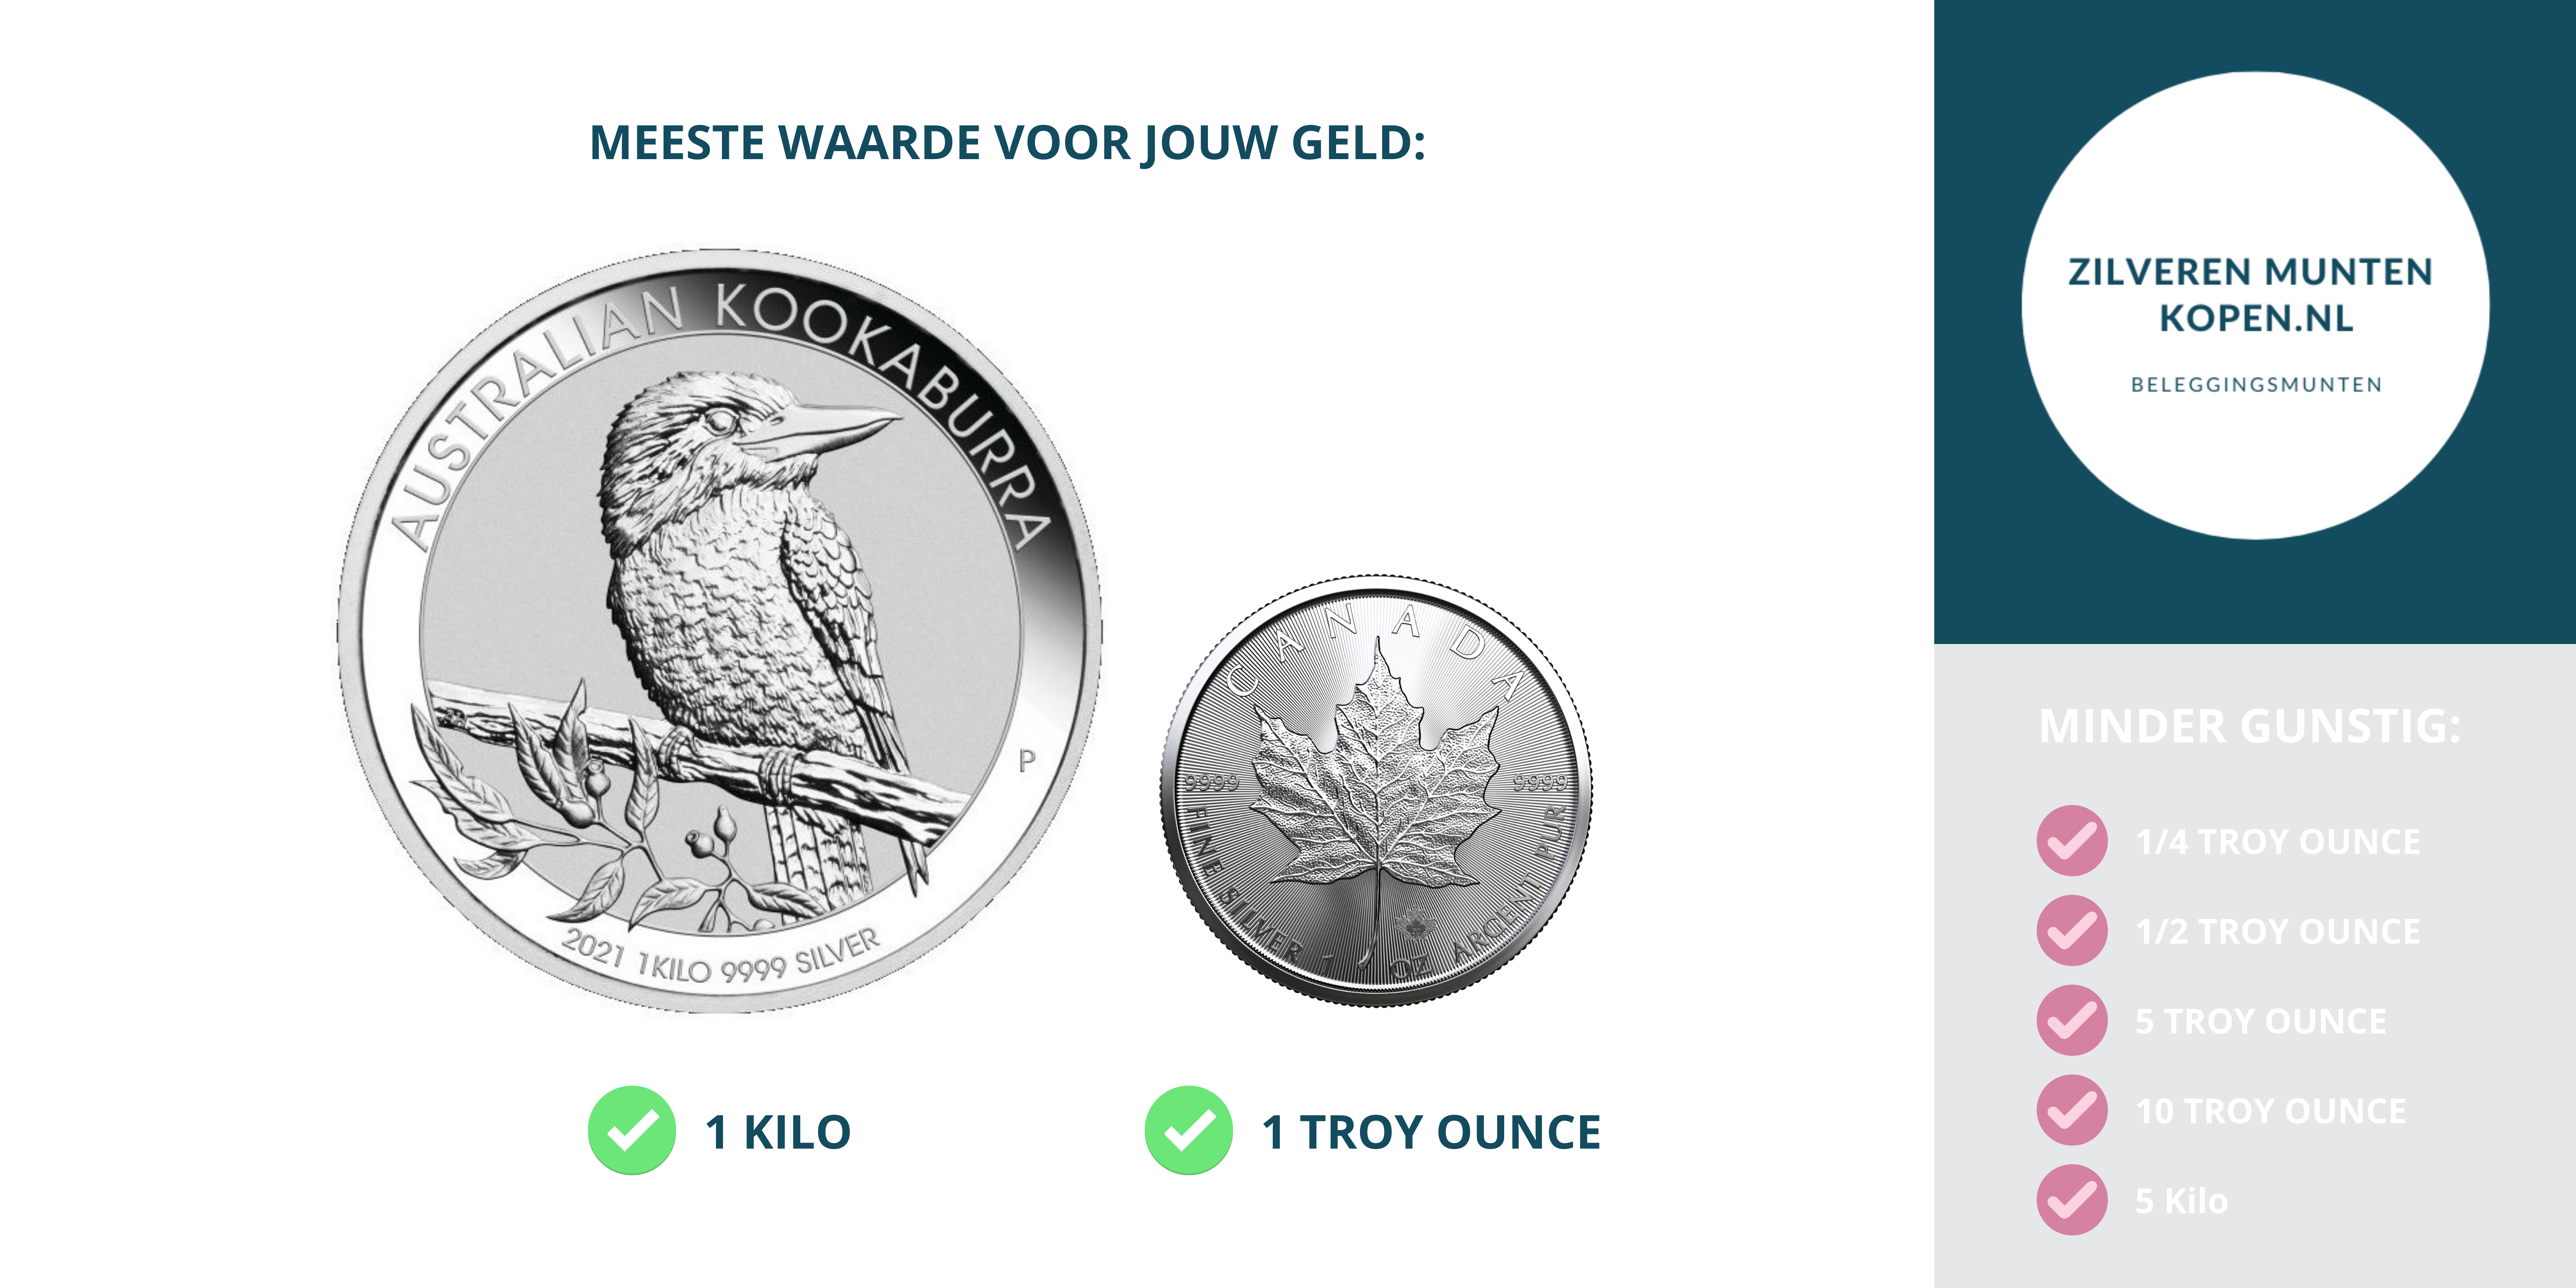 galblaas scheidsrechter rechter Zilveren munten kopen - Puur zilveren munten Zilverenmuntenkopen.nl